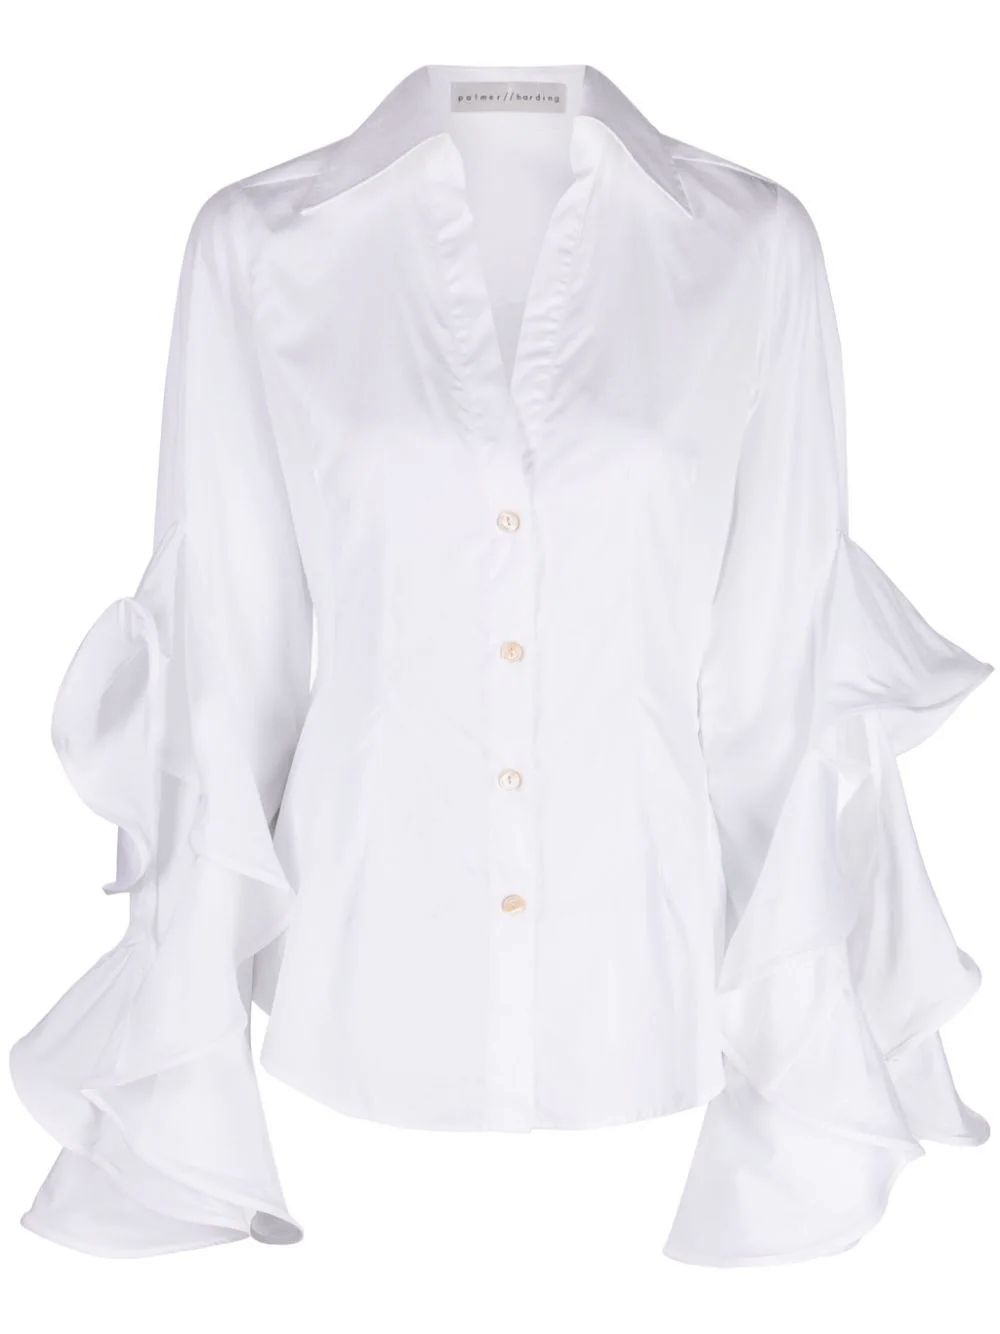 palmer-harding-Prosper-Shirt-White-1